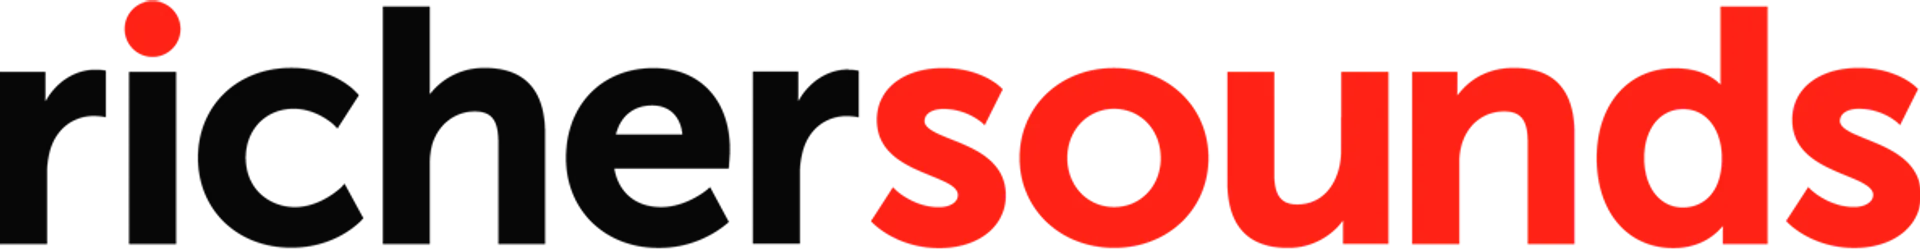 RICHER SOUNDS logo